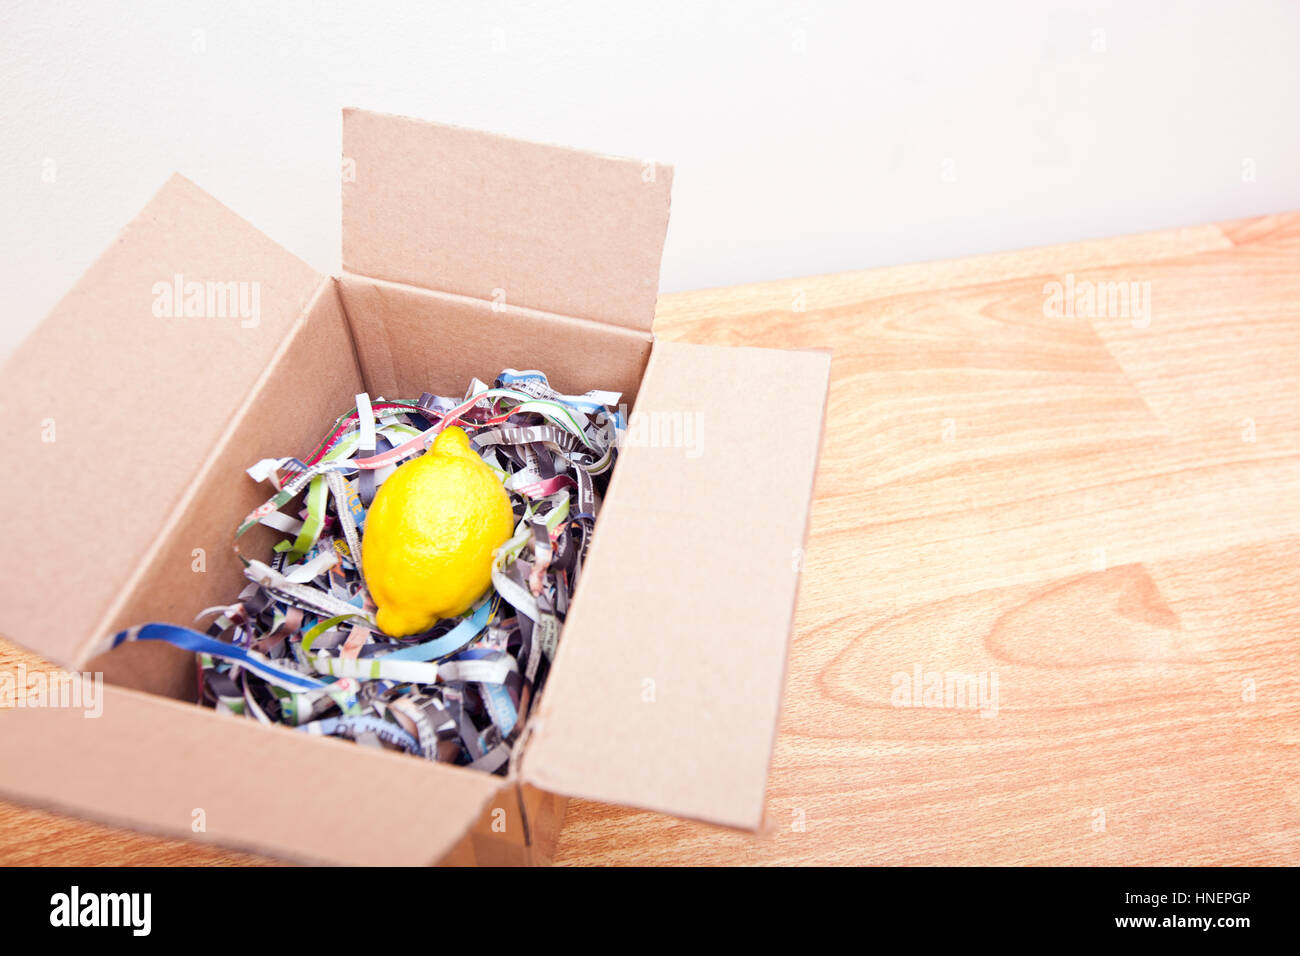 Le citron enveloppé dans une boîte Banque D'Images